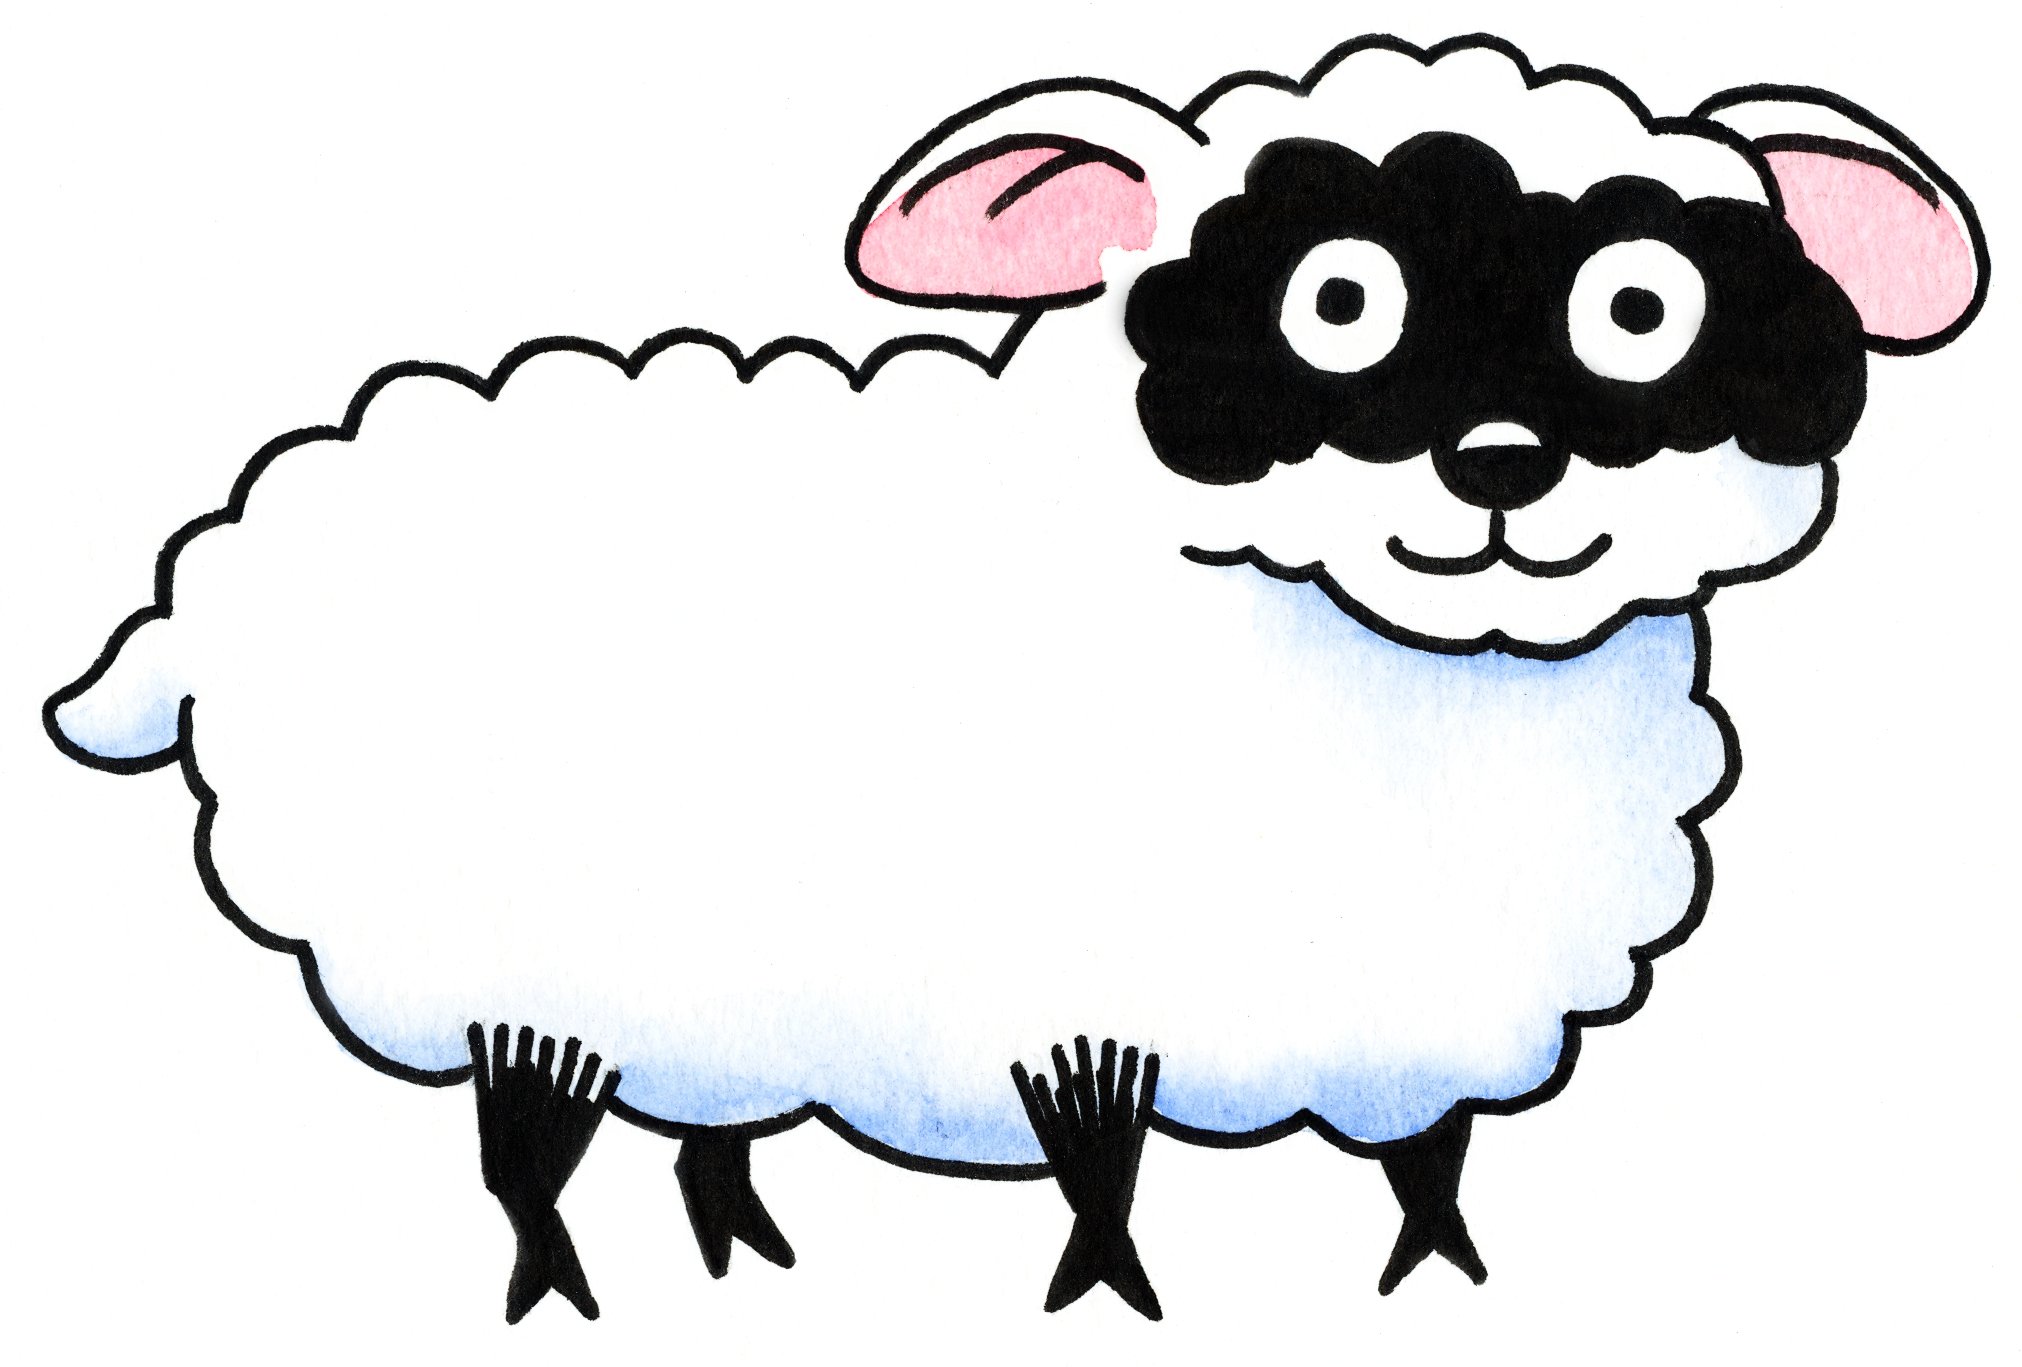 An Irish Sheep